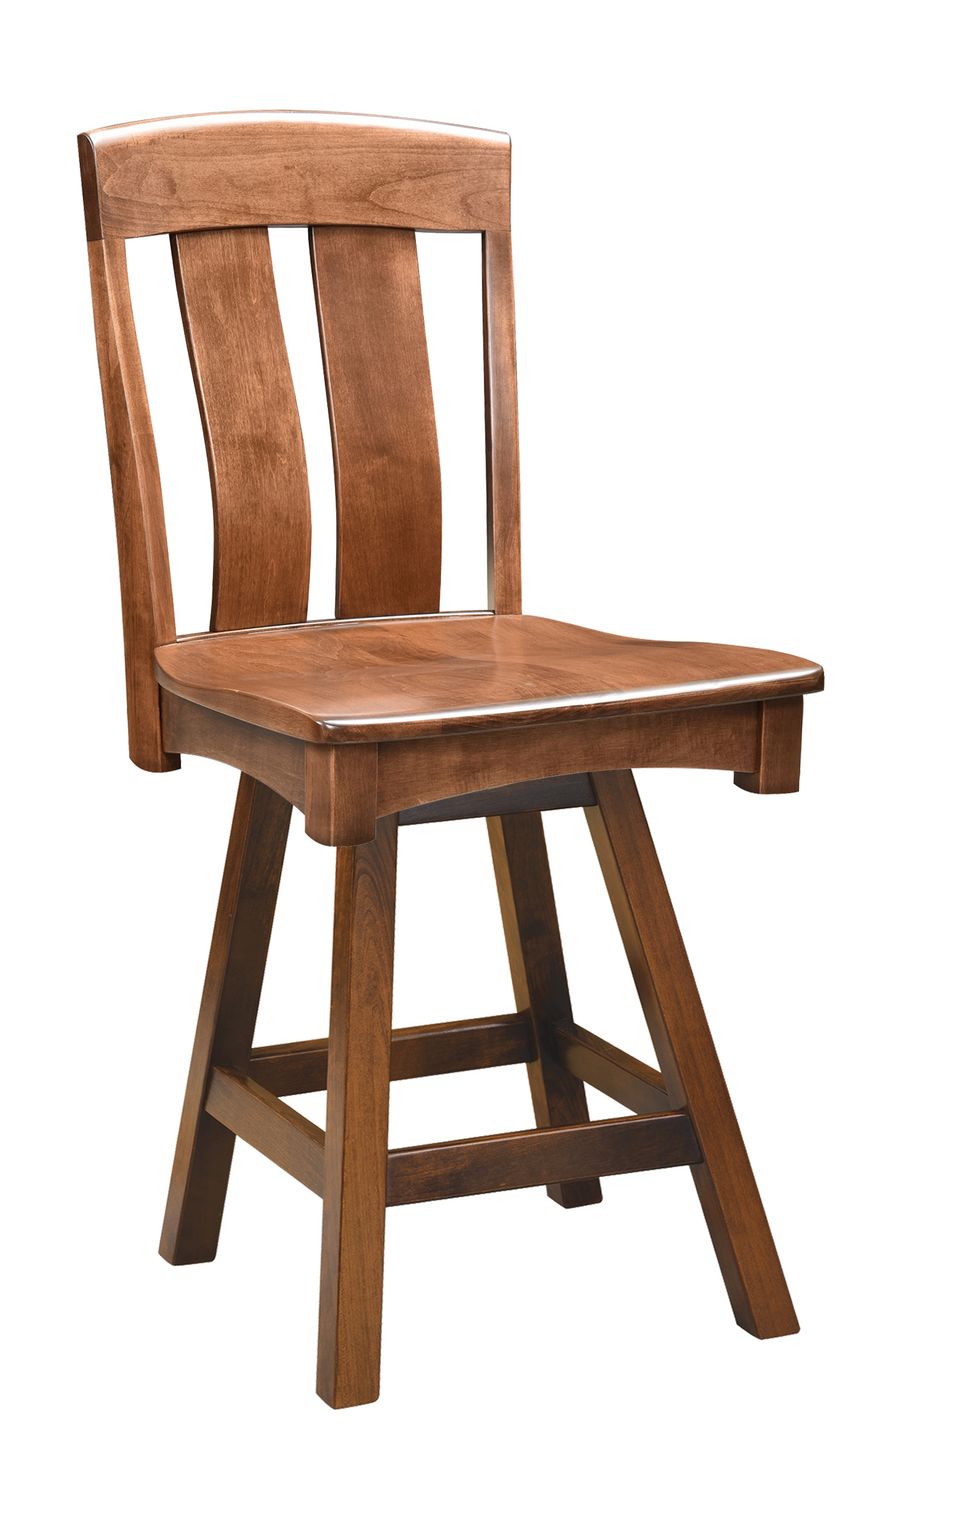 Faw cheyenne swivel bar chair